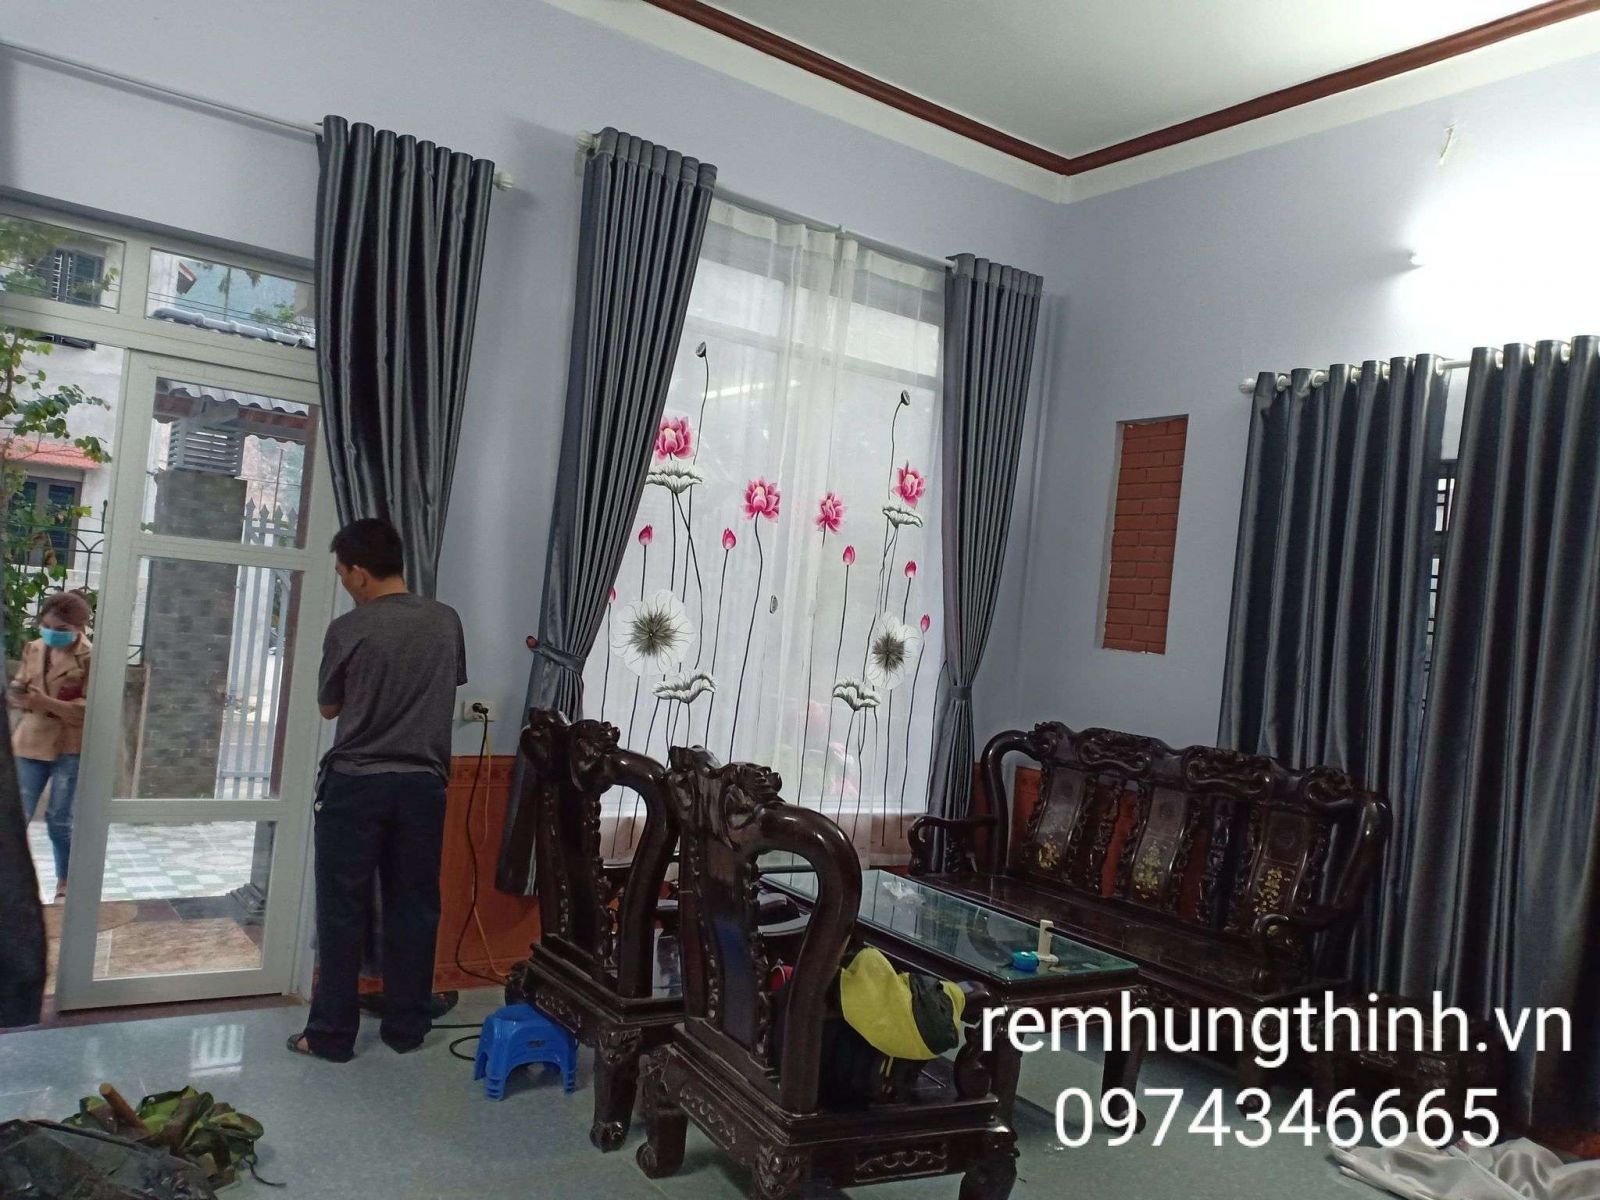 Địa chỉ mua rèm vải voan thêu tay tại quận Hà Đông – Hà Nội